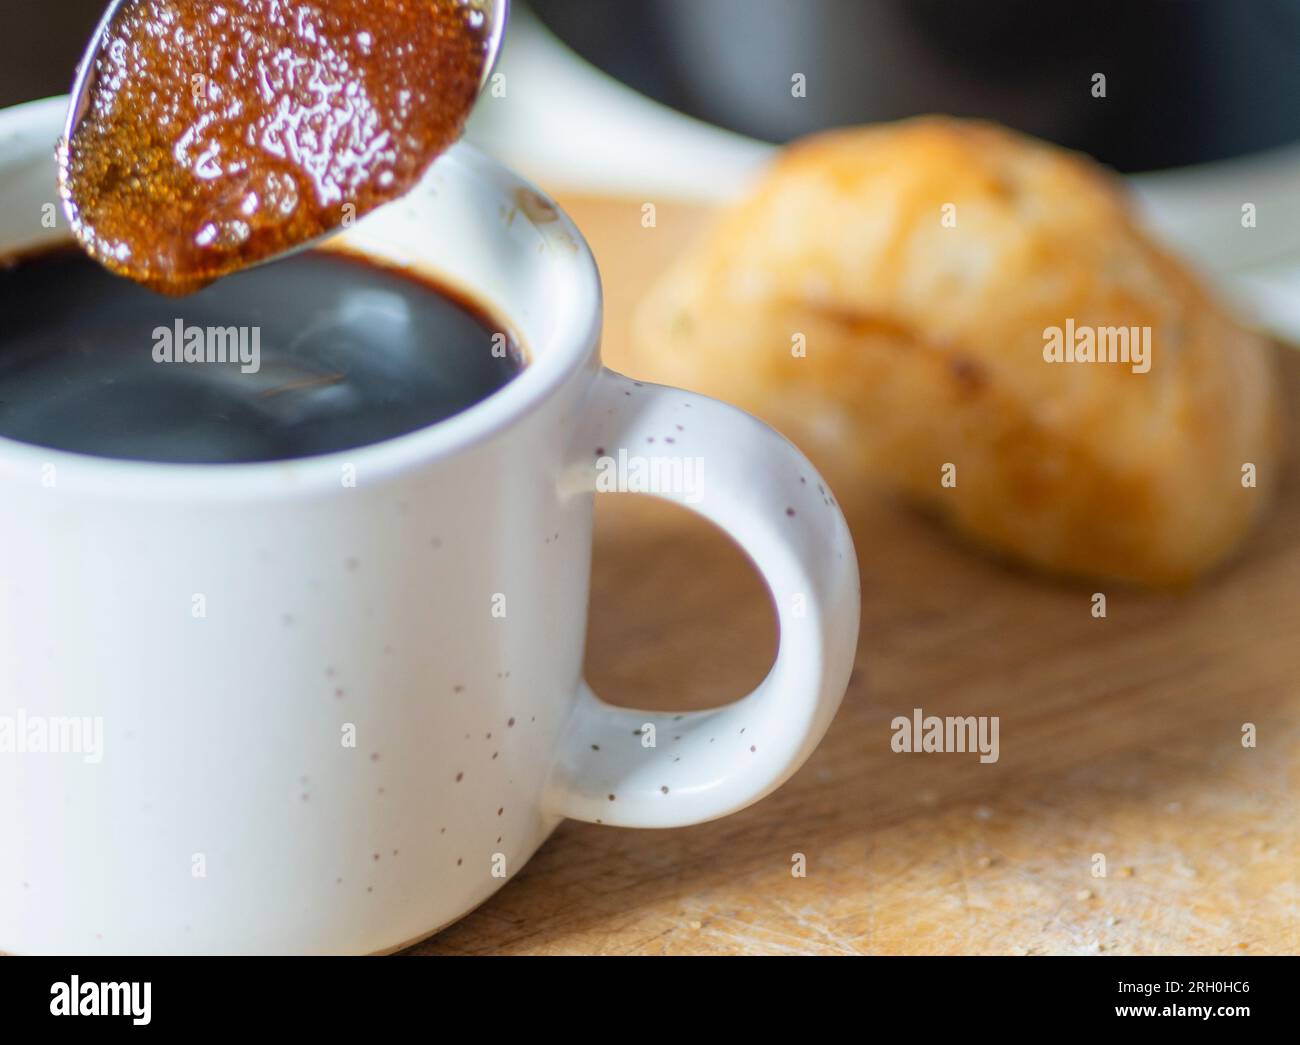 Braune Zuckerkörner ziehen den heißen Kaffee zu einer sirupen Konsistenz auf, bevor sie in einen frisch gebrühten schwarzen Espresso gerührt werden, der trinkfertig und heiß ist Stockfoto